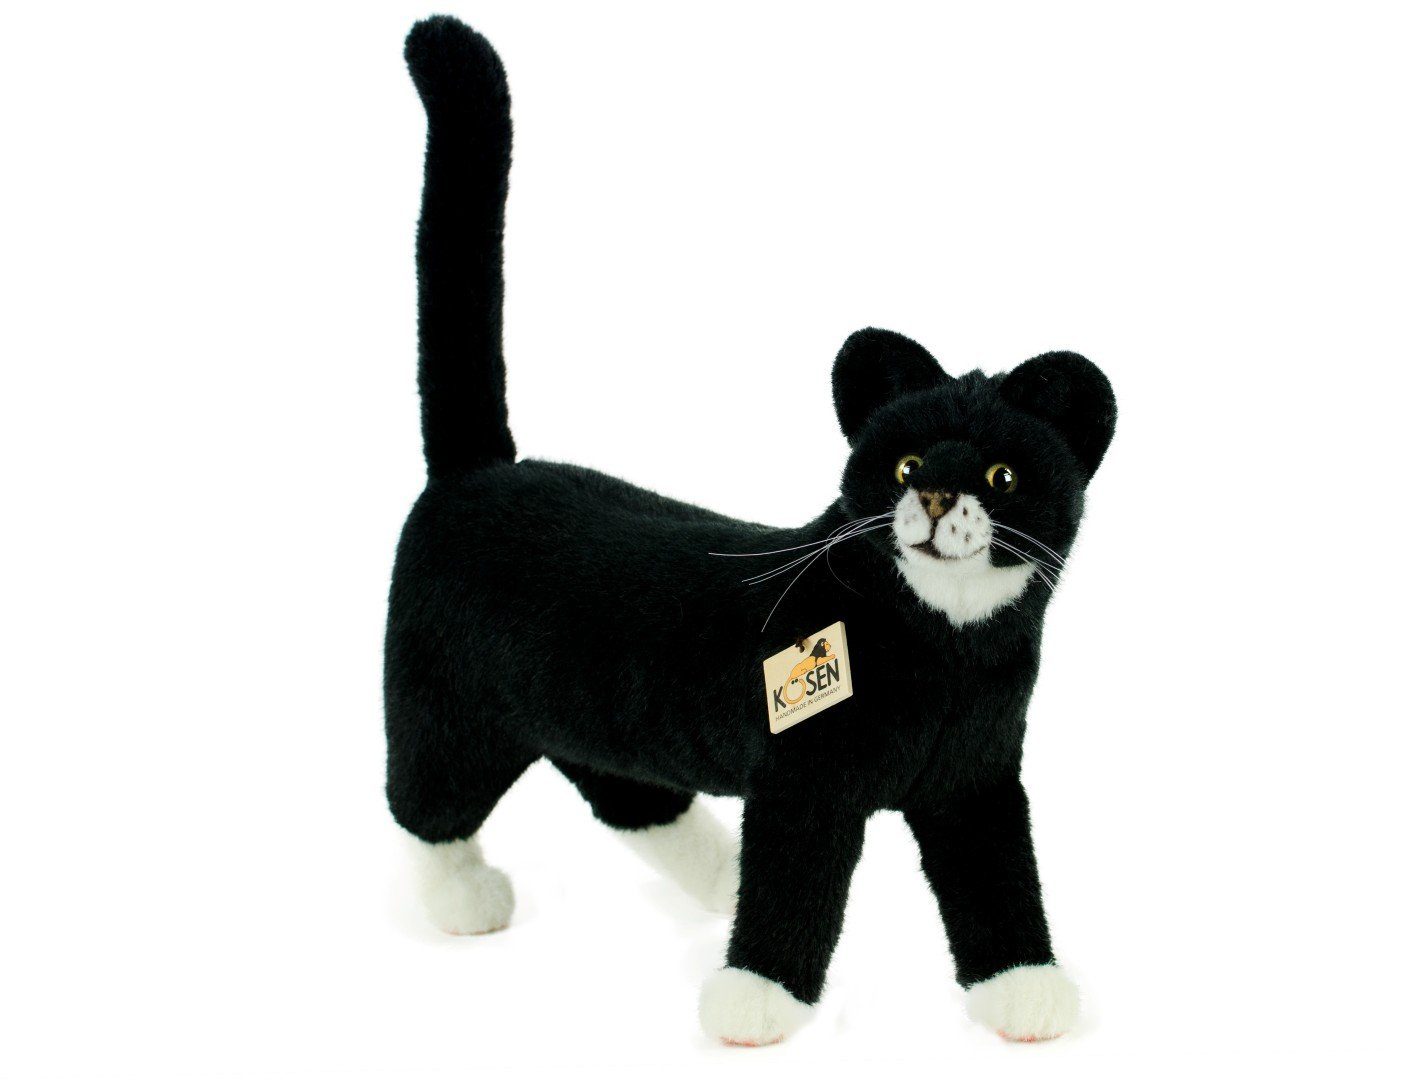 Kösen Kuscheltier »Katze schwarz-weiß Mauz 40 cm stehend« (Stoffkatze  Plüschkatze Stofftiere Katzen Plüschtiere, schwarz-weiße Katze) online  kaufen | OTTO